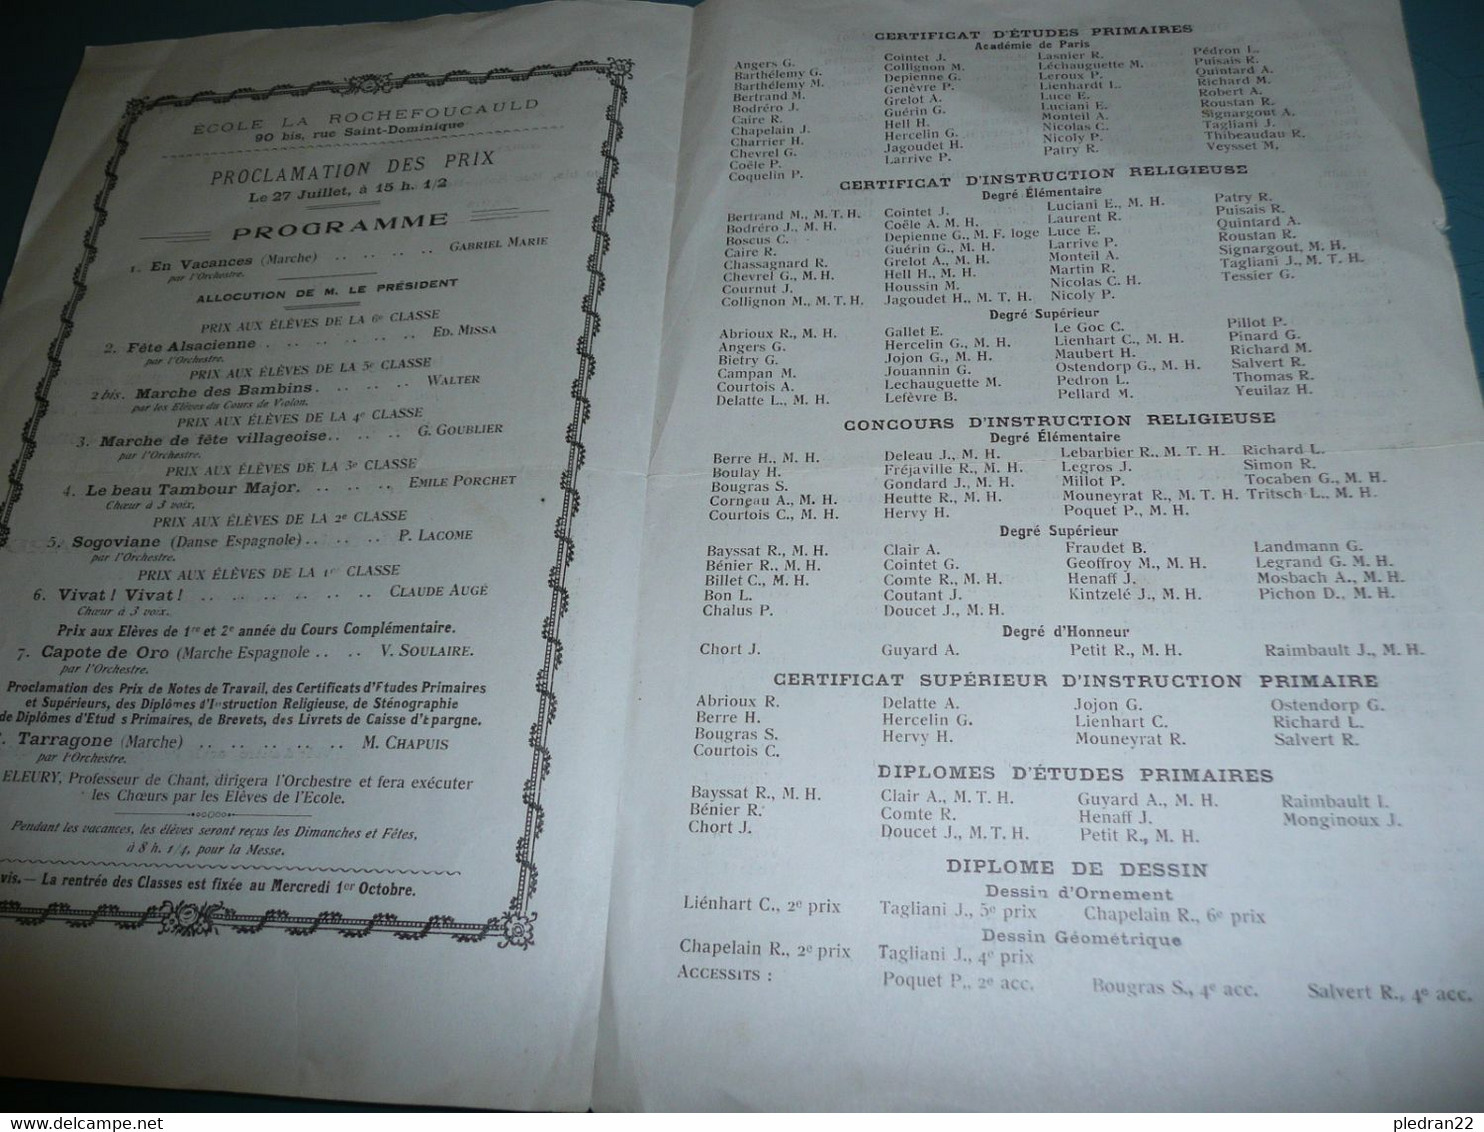 ECOLE LA ROCHEFOUCAULD PARIS PROGRAMME DE LA DISTRIBUTION DES PRIX 25 JUILLET 1924 NOMS DES ELEVES - Programmes